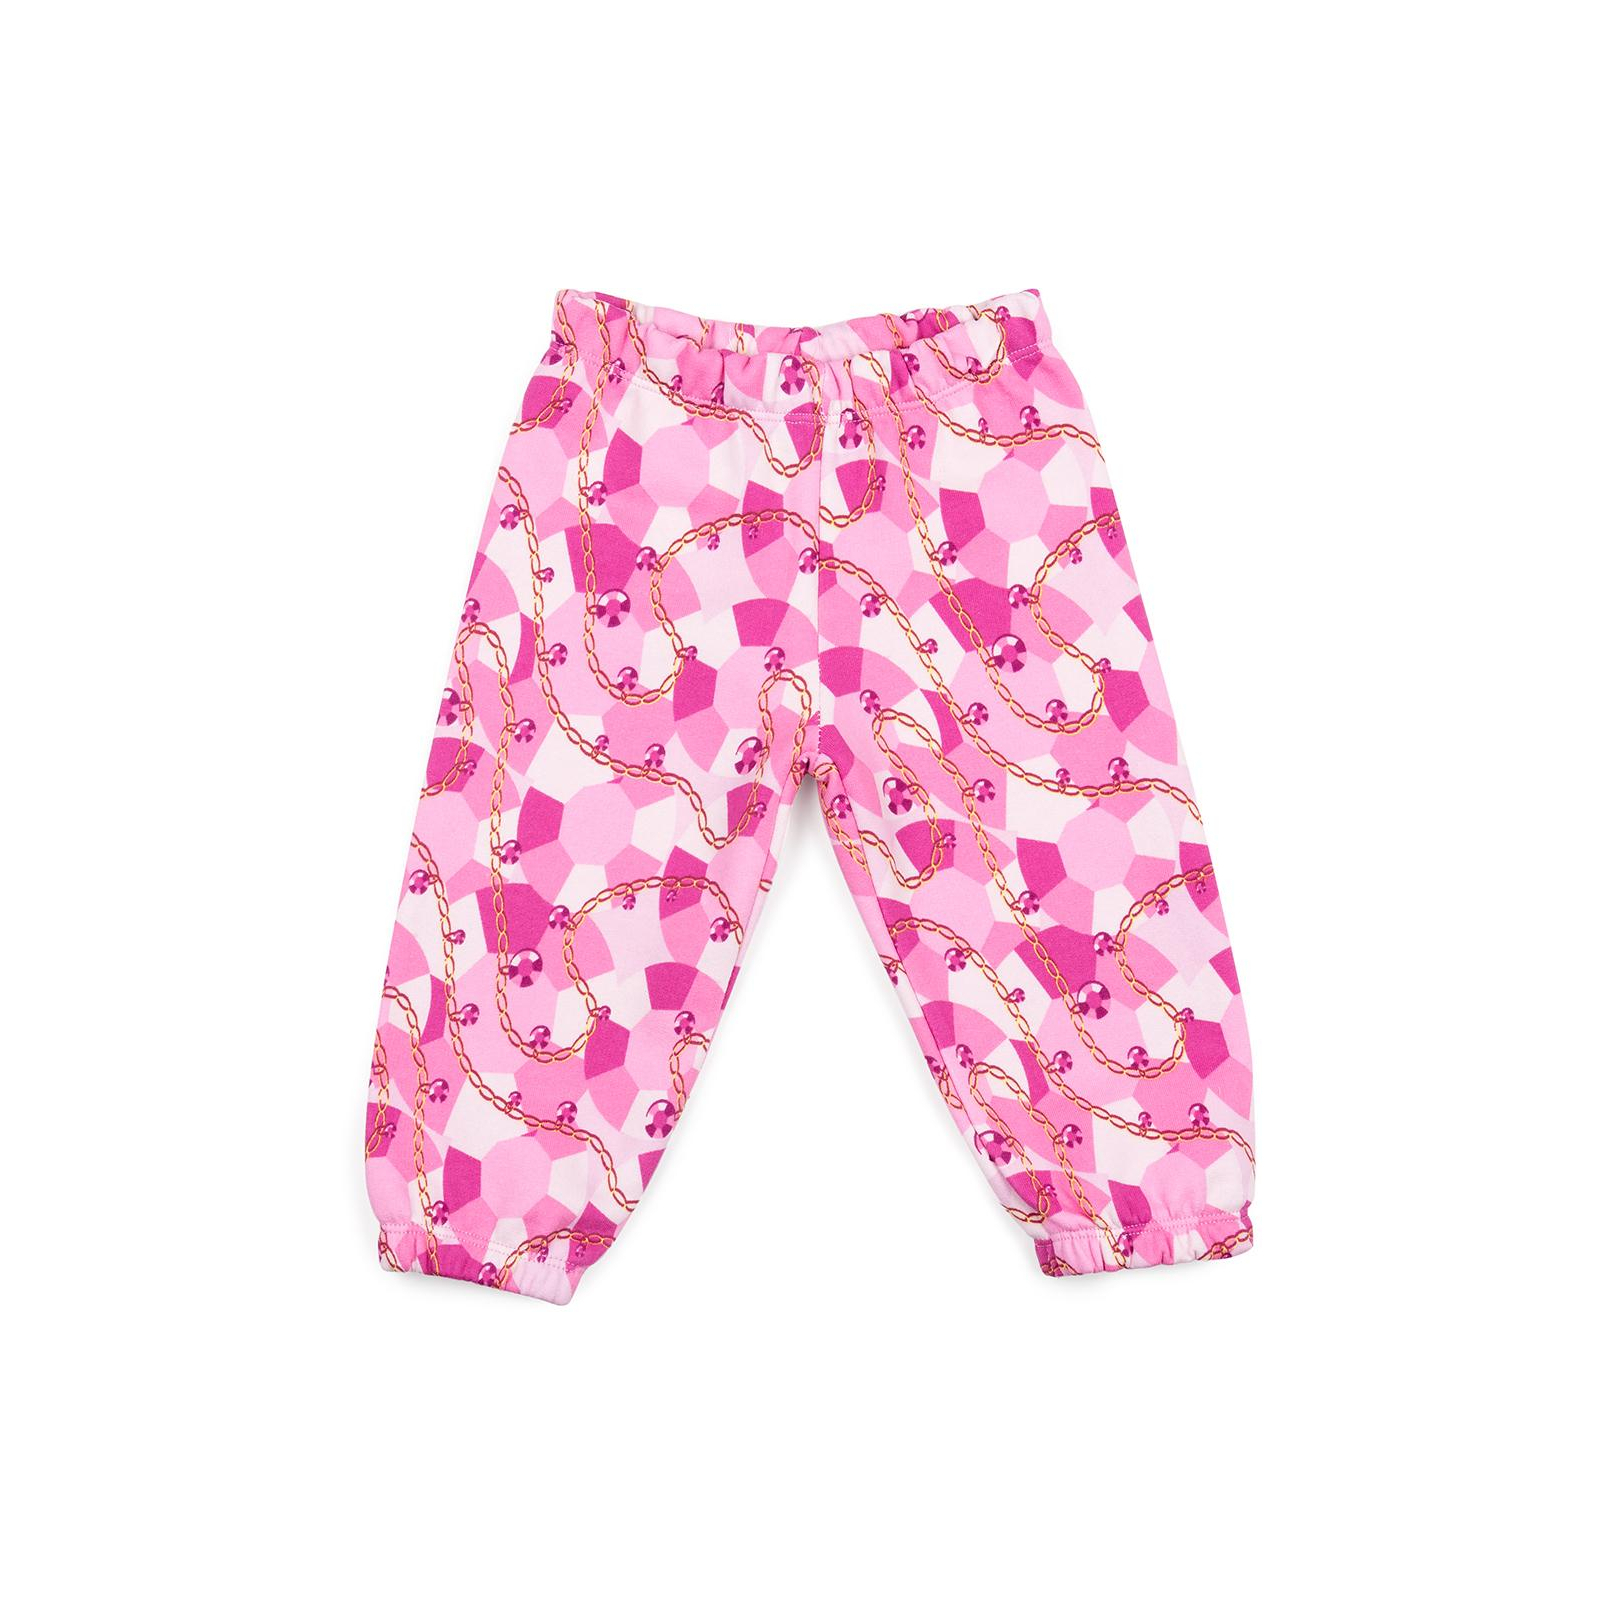 Пижама Breeze розовая (12152-98G-pink) изображение 3